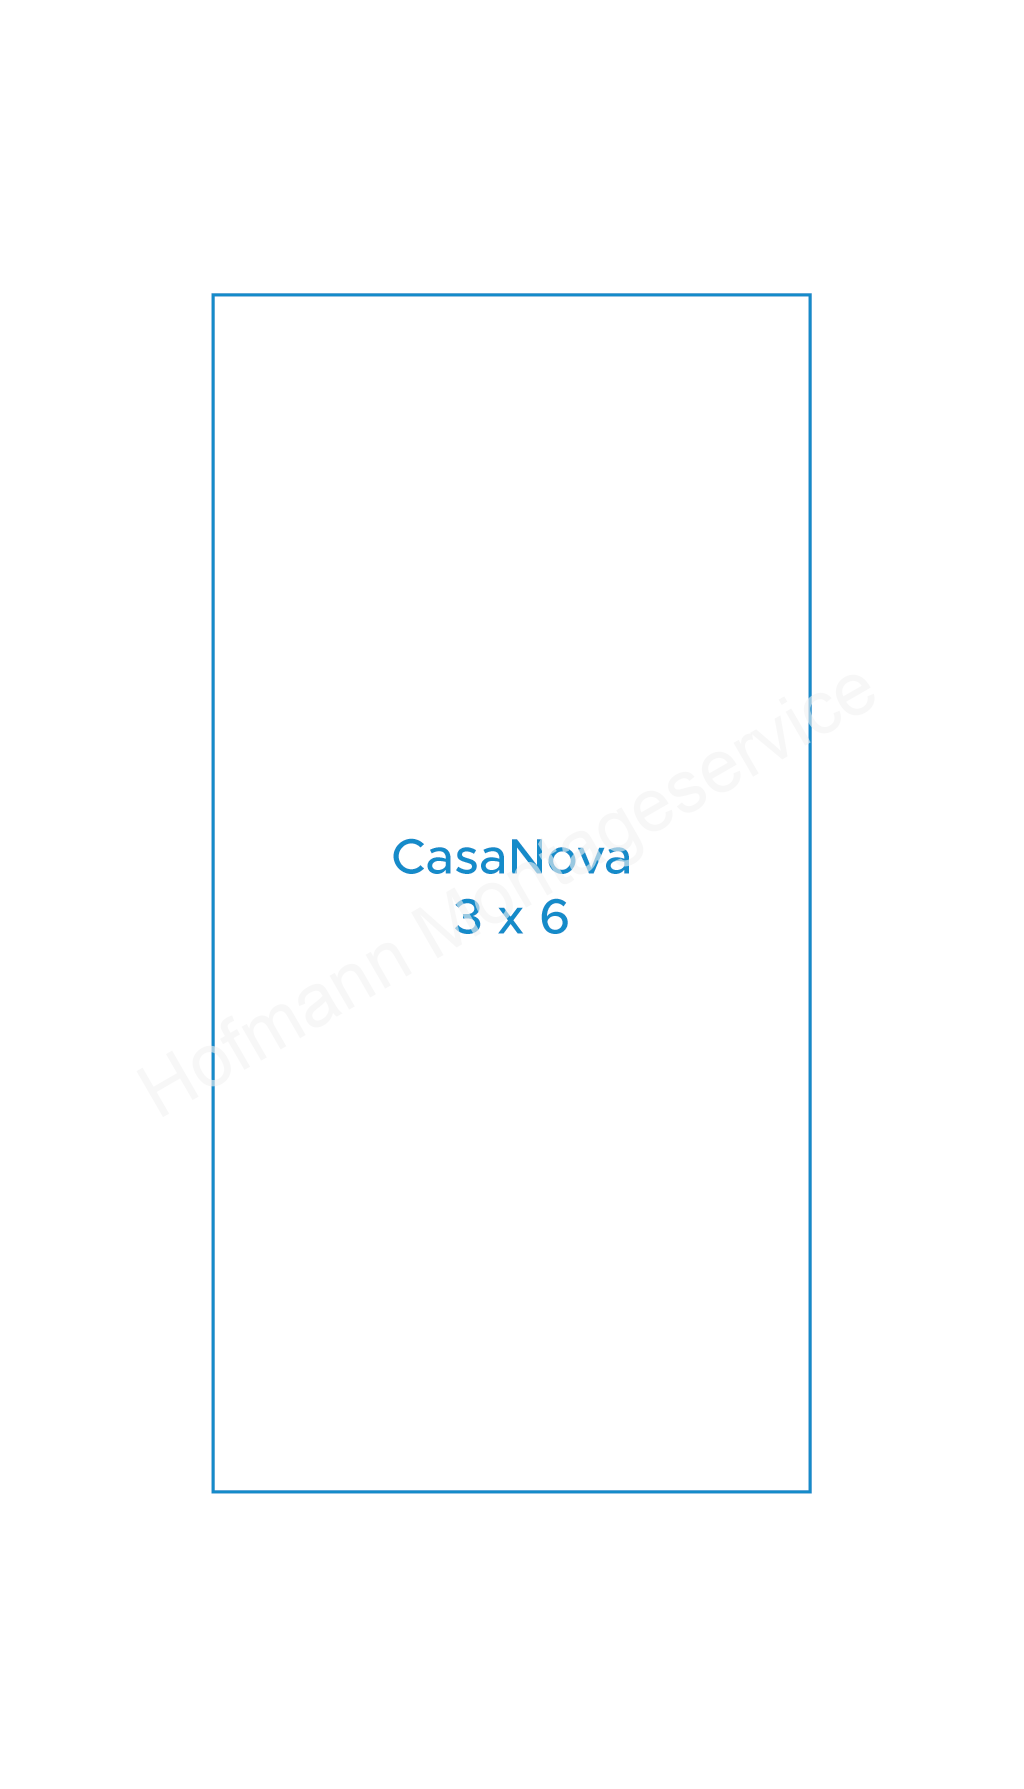 CasaNova 3x6